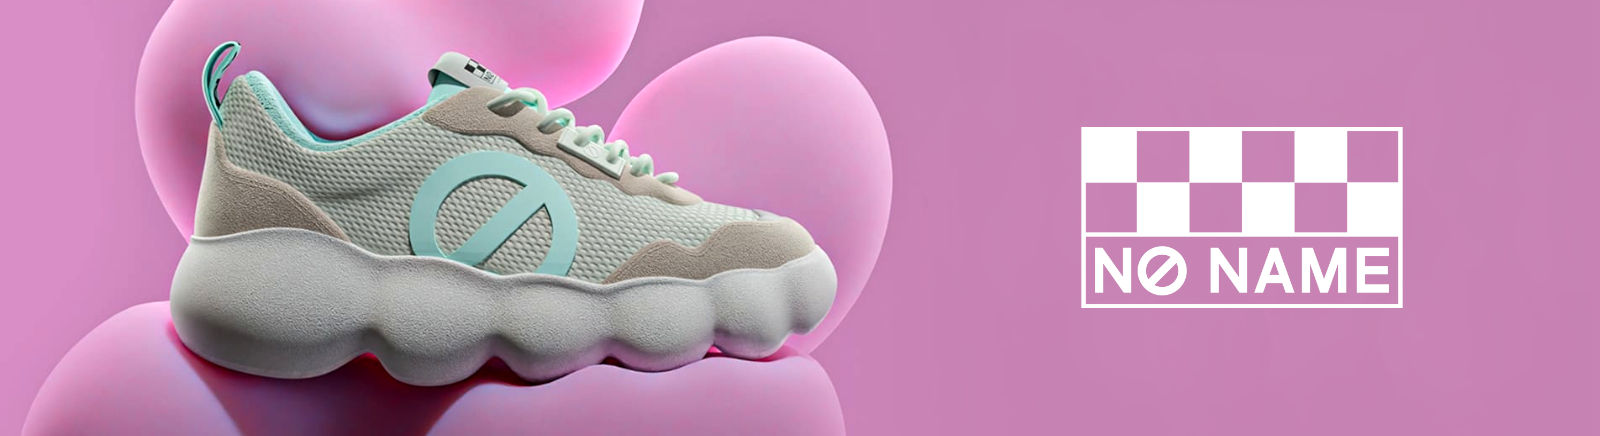 No Name Damenschuhe online kaufen bei Juppen Schuhe